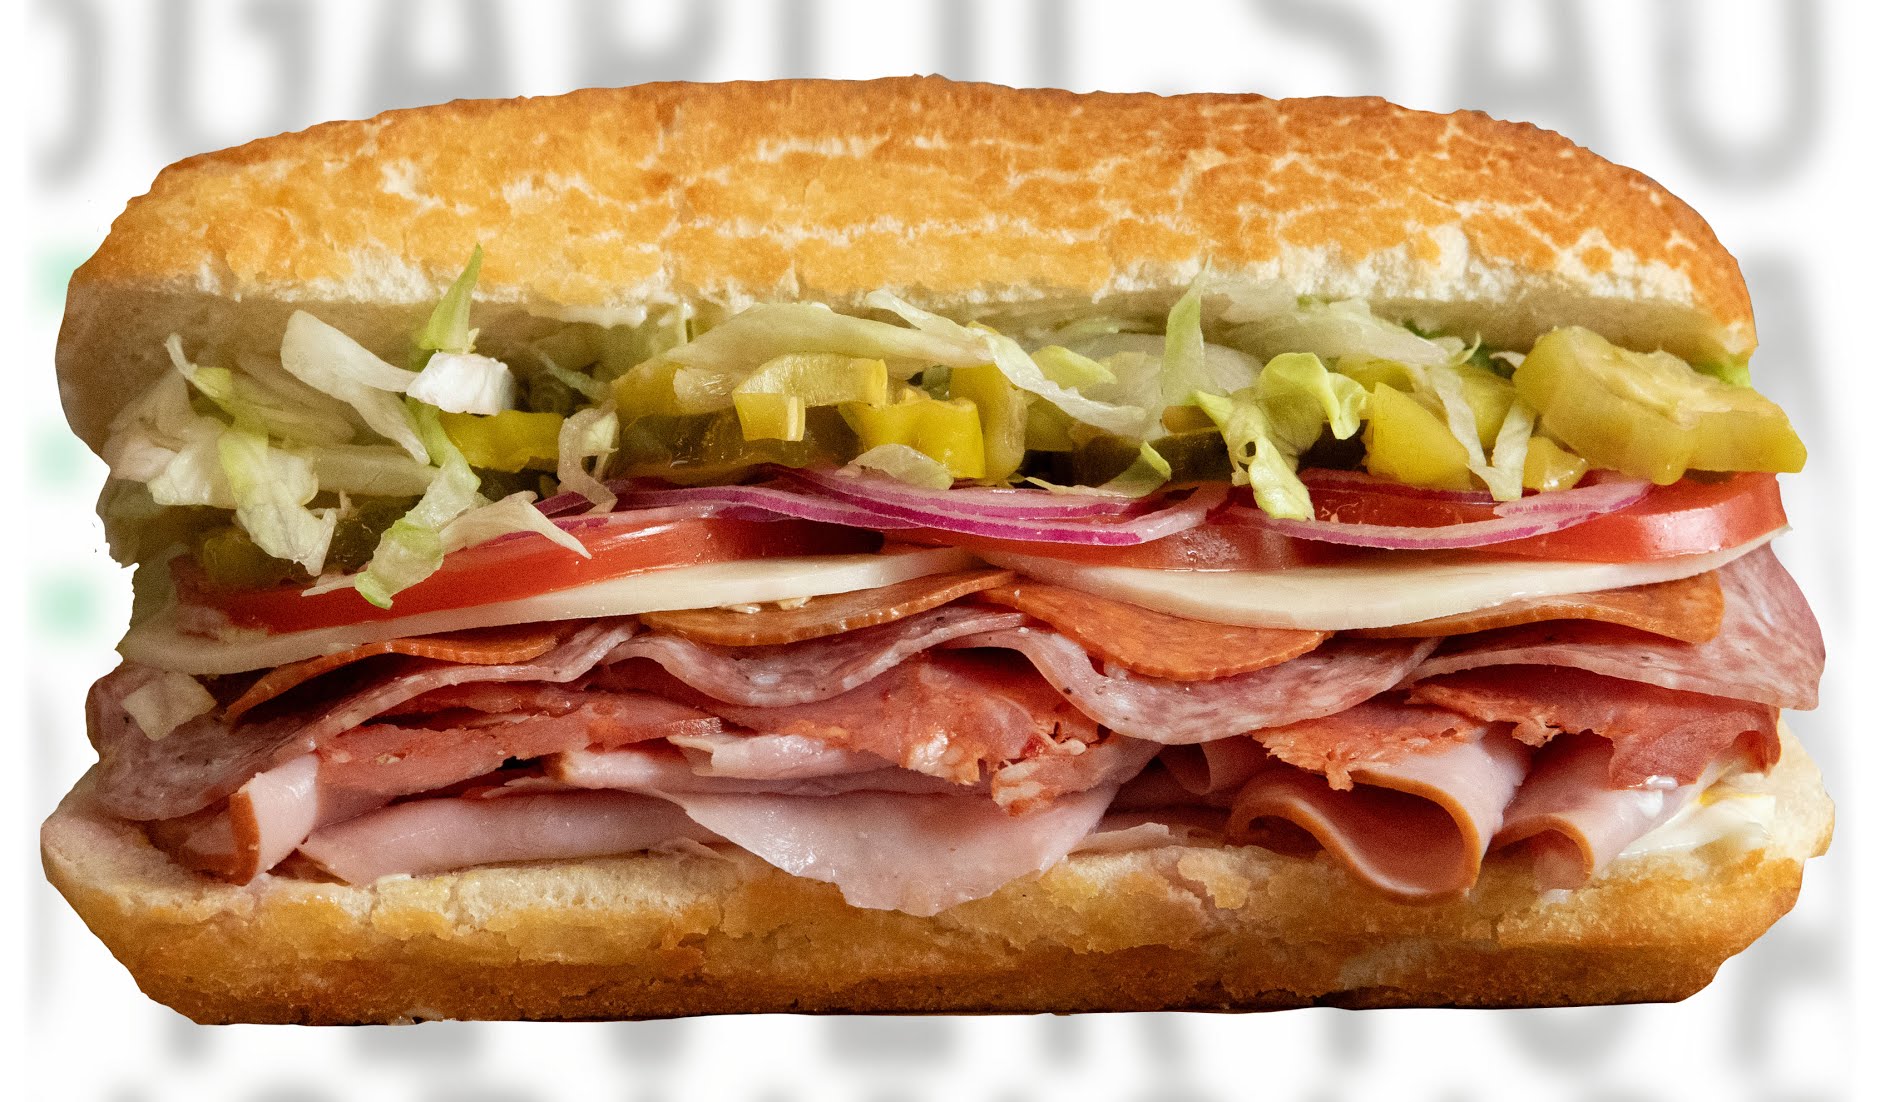 Mr. Pickle's Sandwich Shop - Martinez, CA image